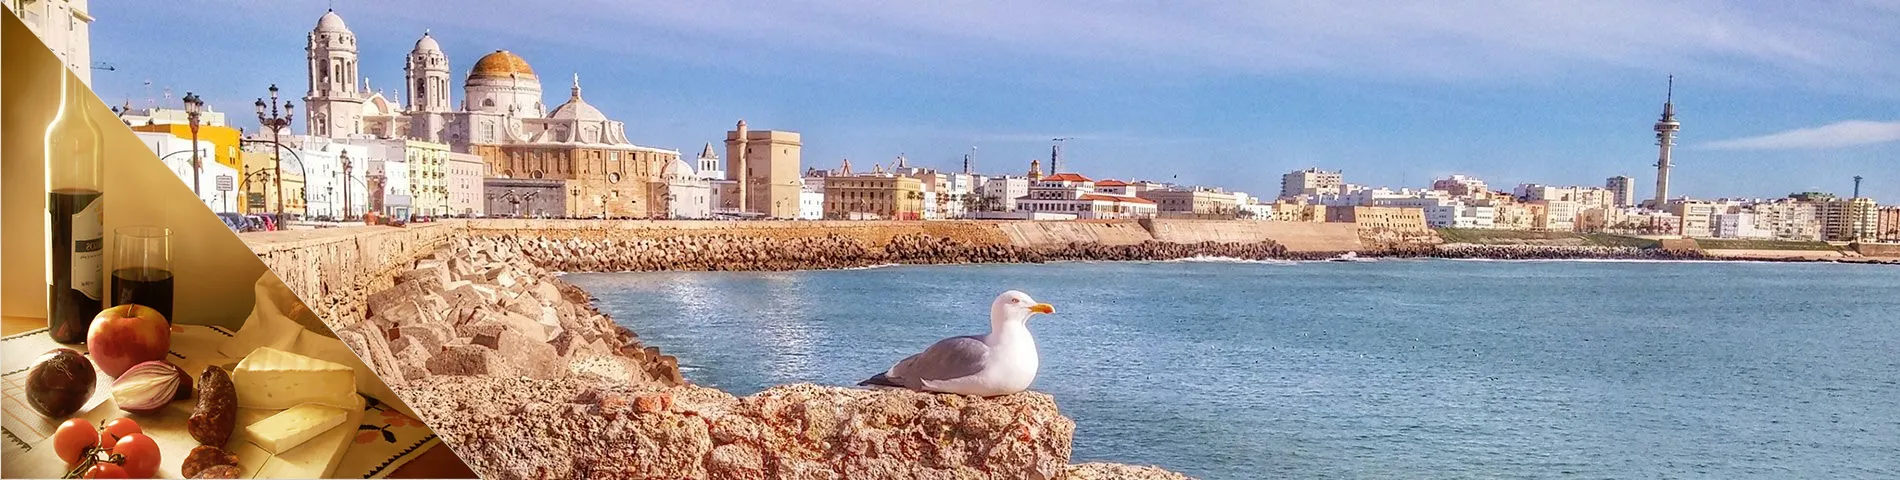 Cádiz - Espanhol & Cultura 